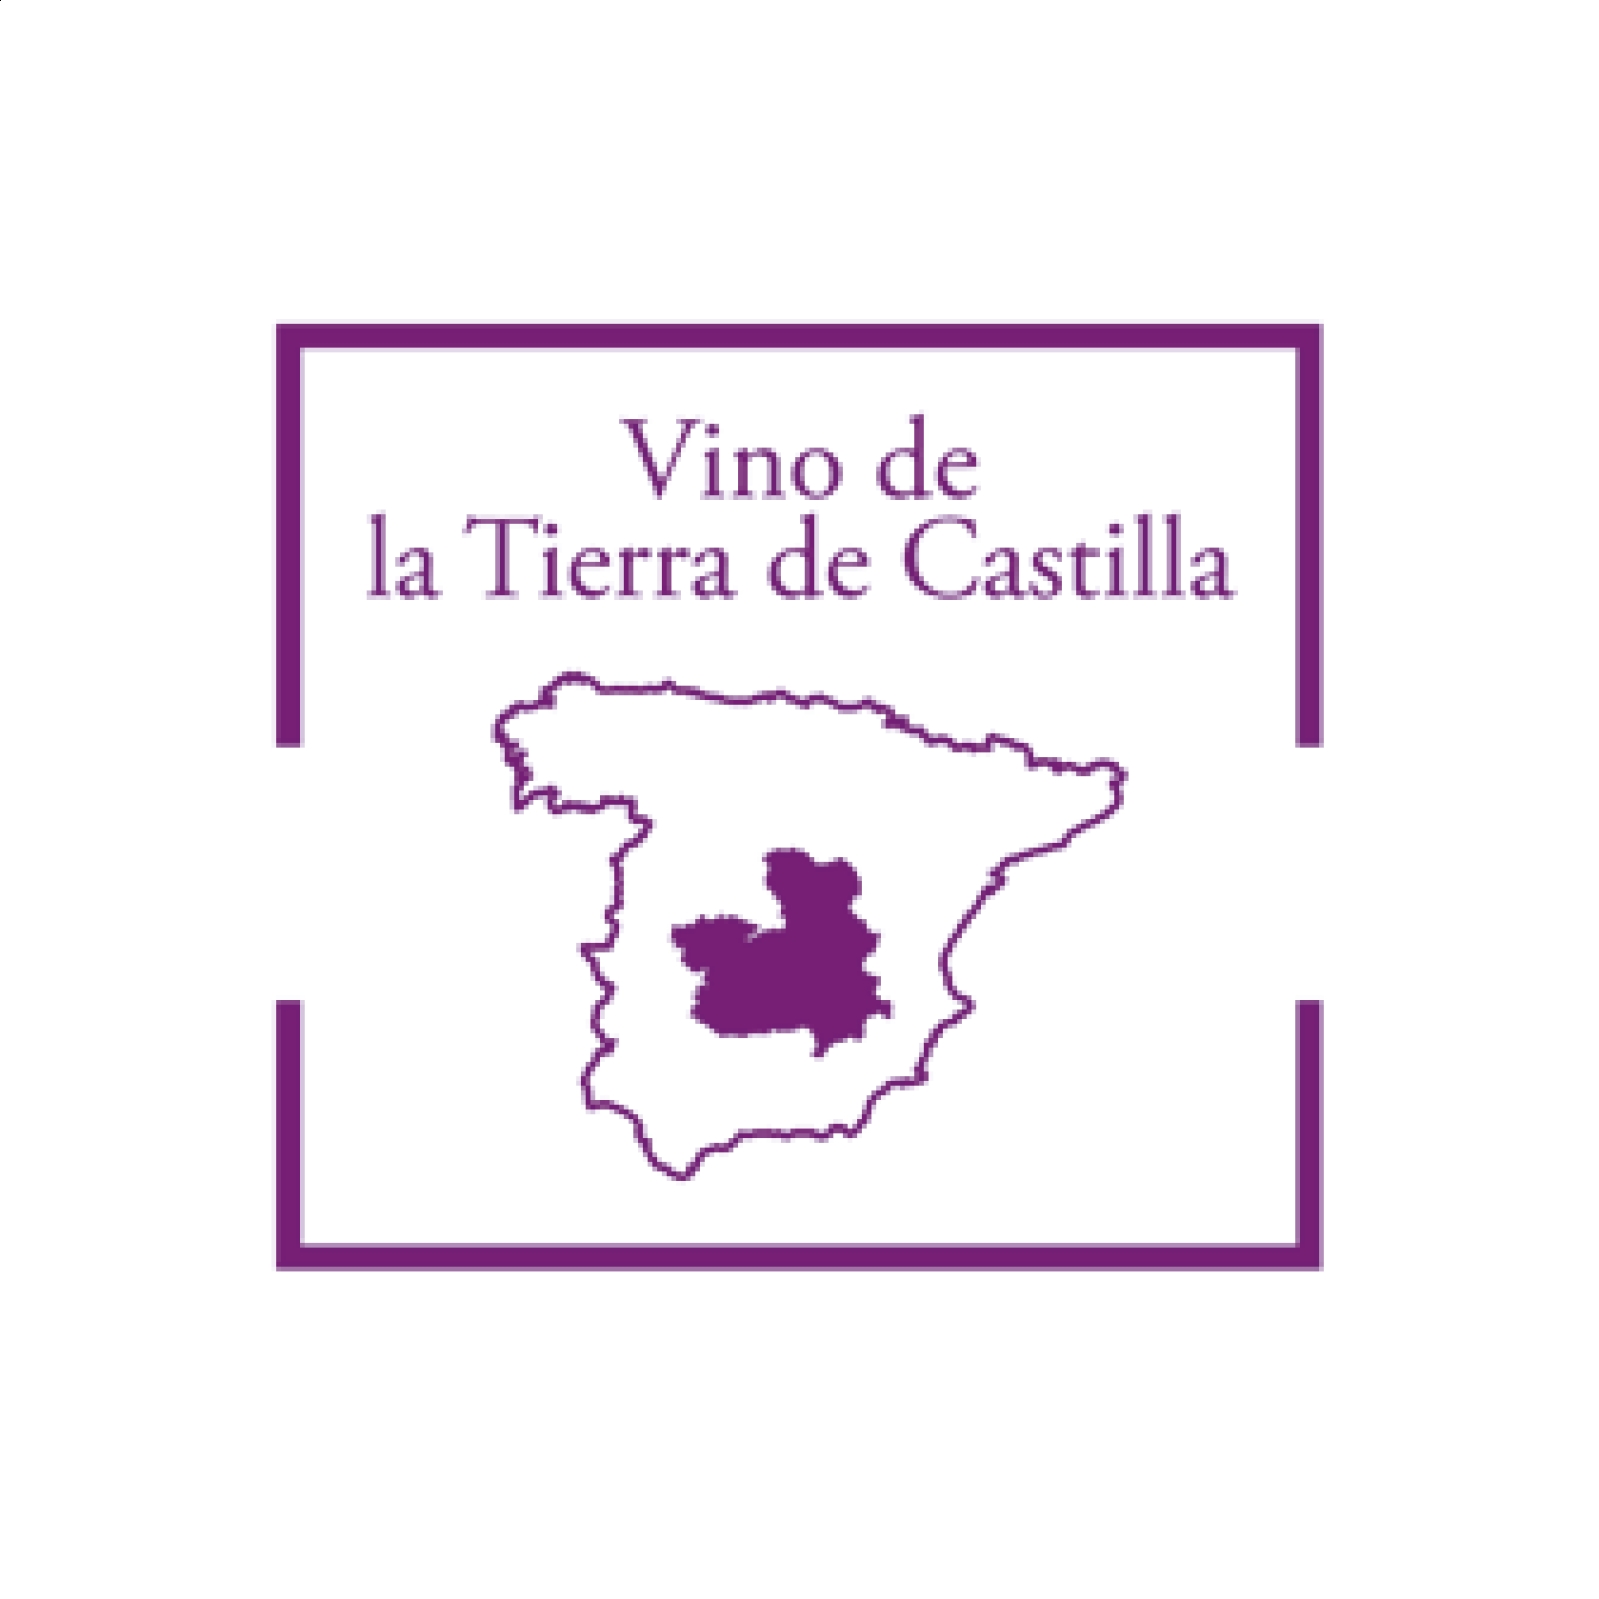 Bodega Carrascas - Al cobijo de una gran sabina vino tinto IGP Vino de la Tierra de Castilla 75cl, 6uds